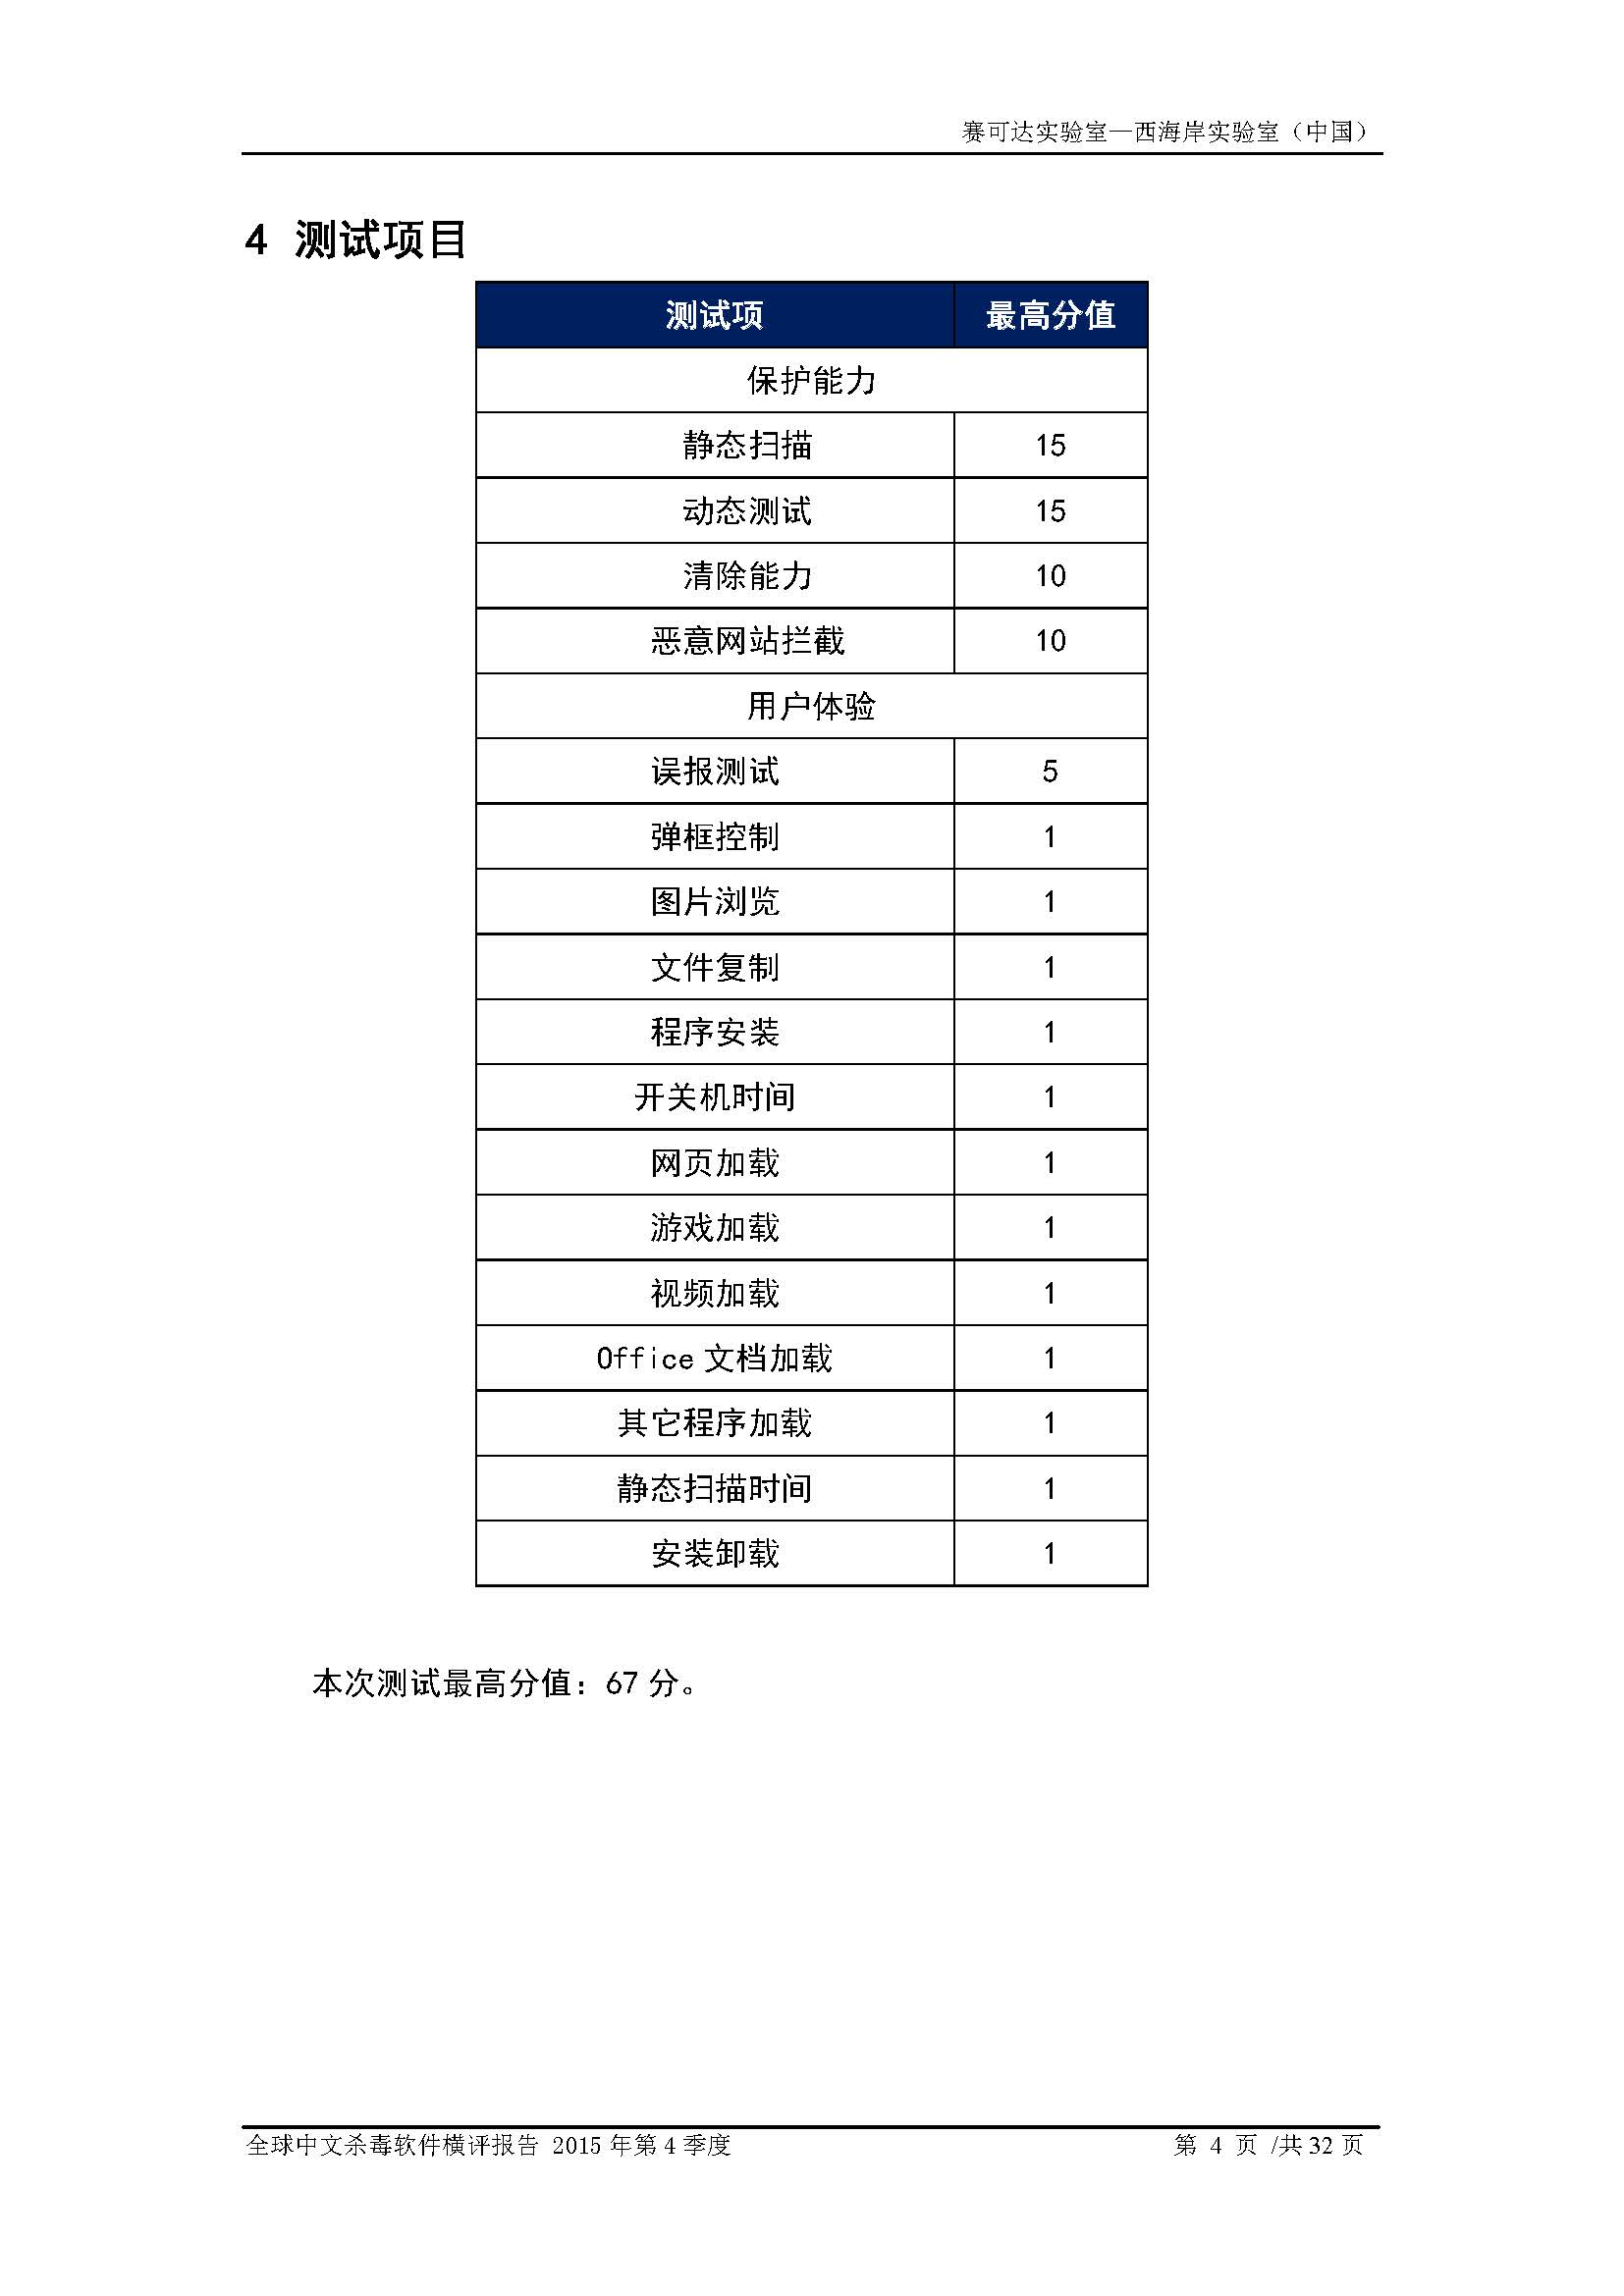 中文PC杀毒软件横评测试报告- Windows 8.1【中文版】.pdf (_Page_06.jpg